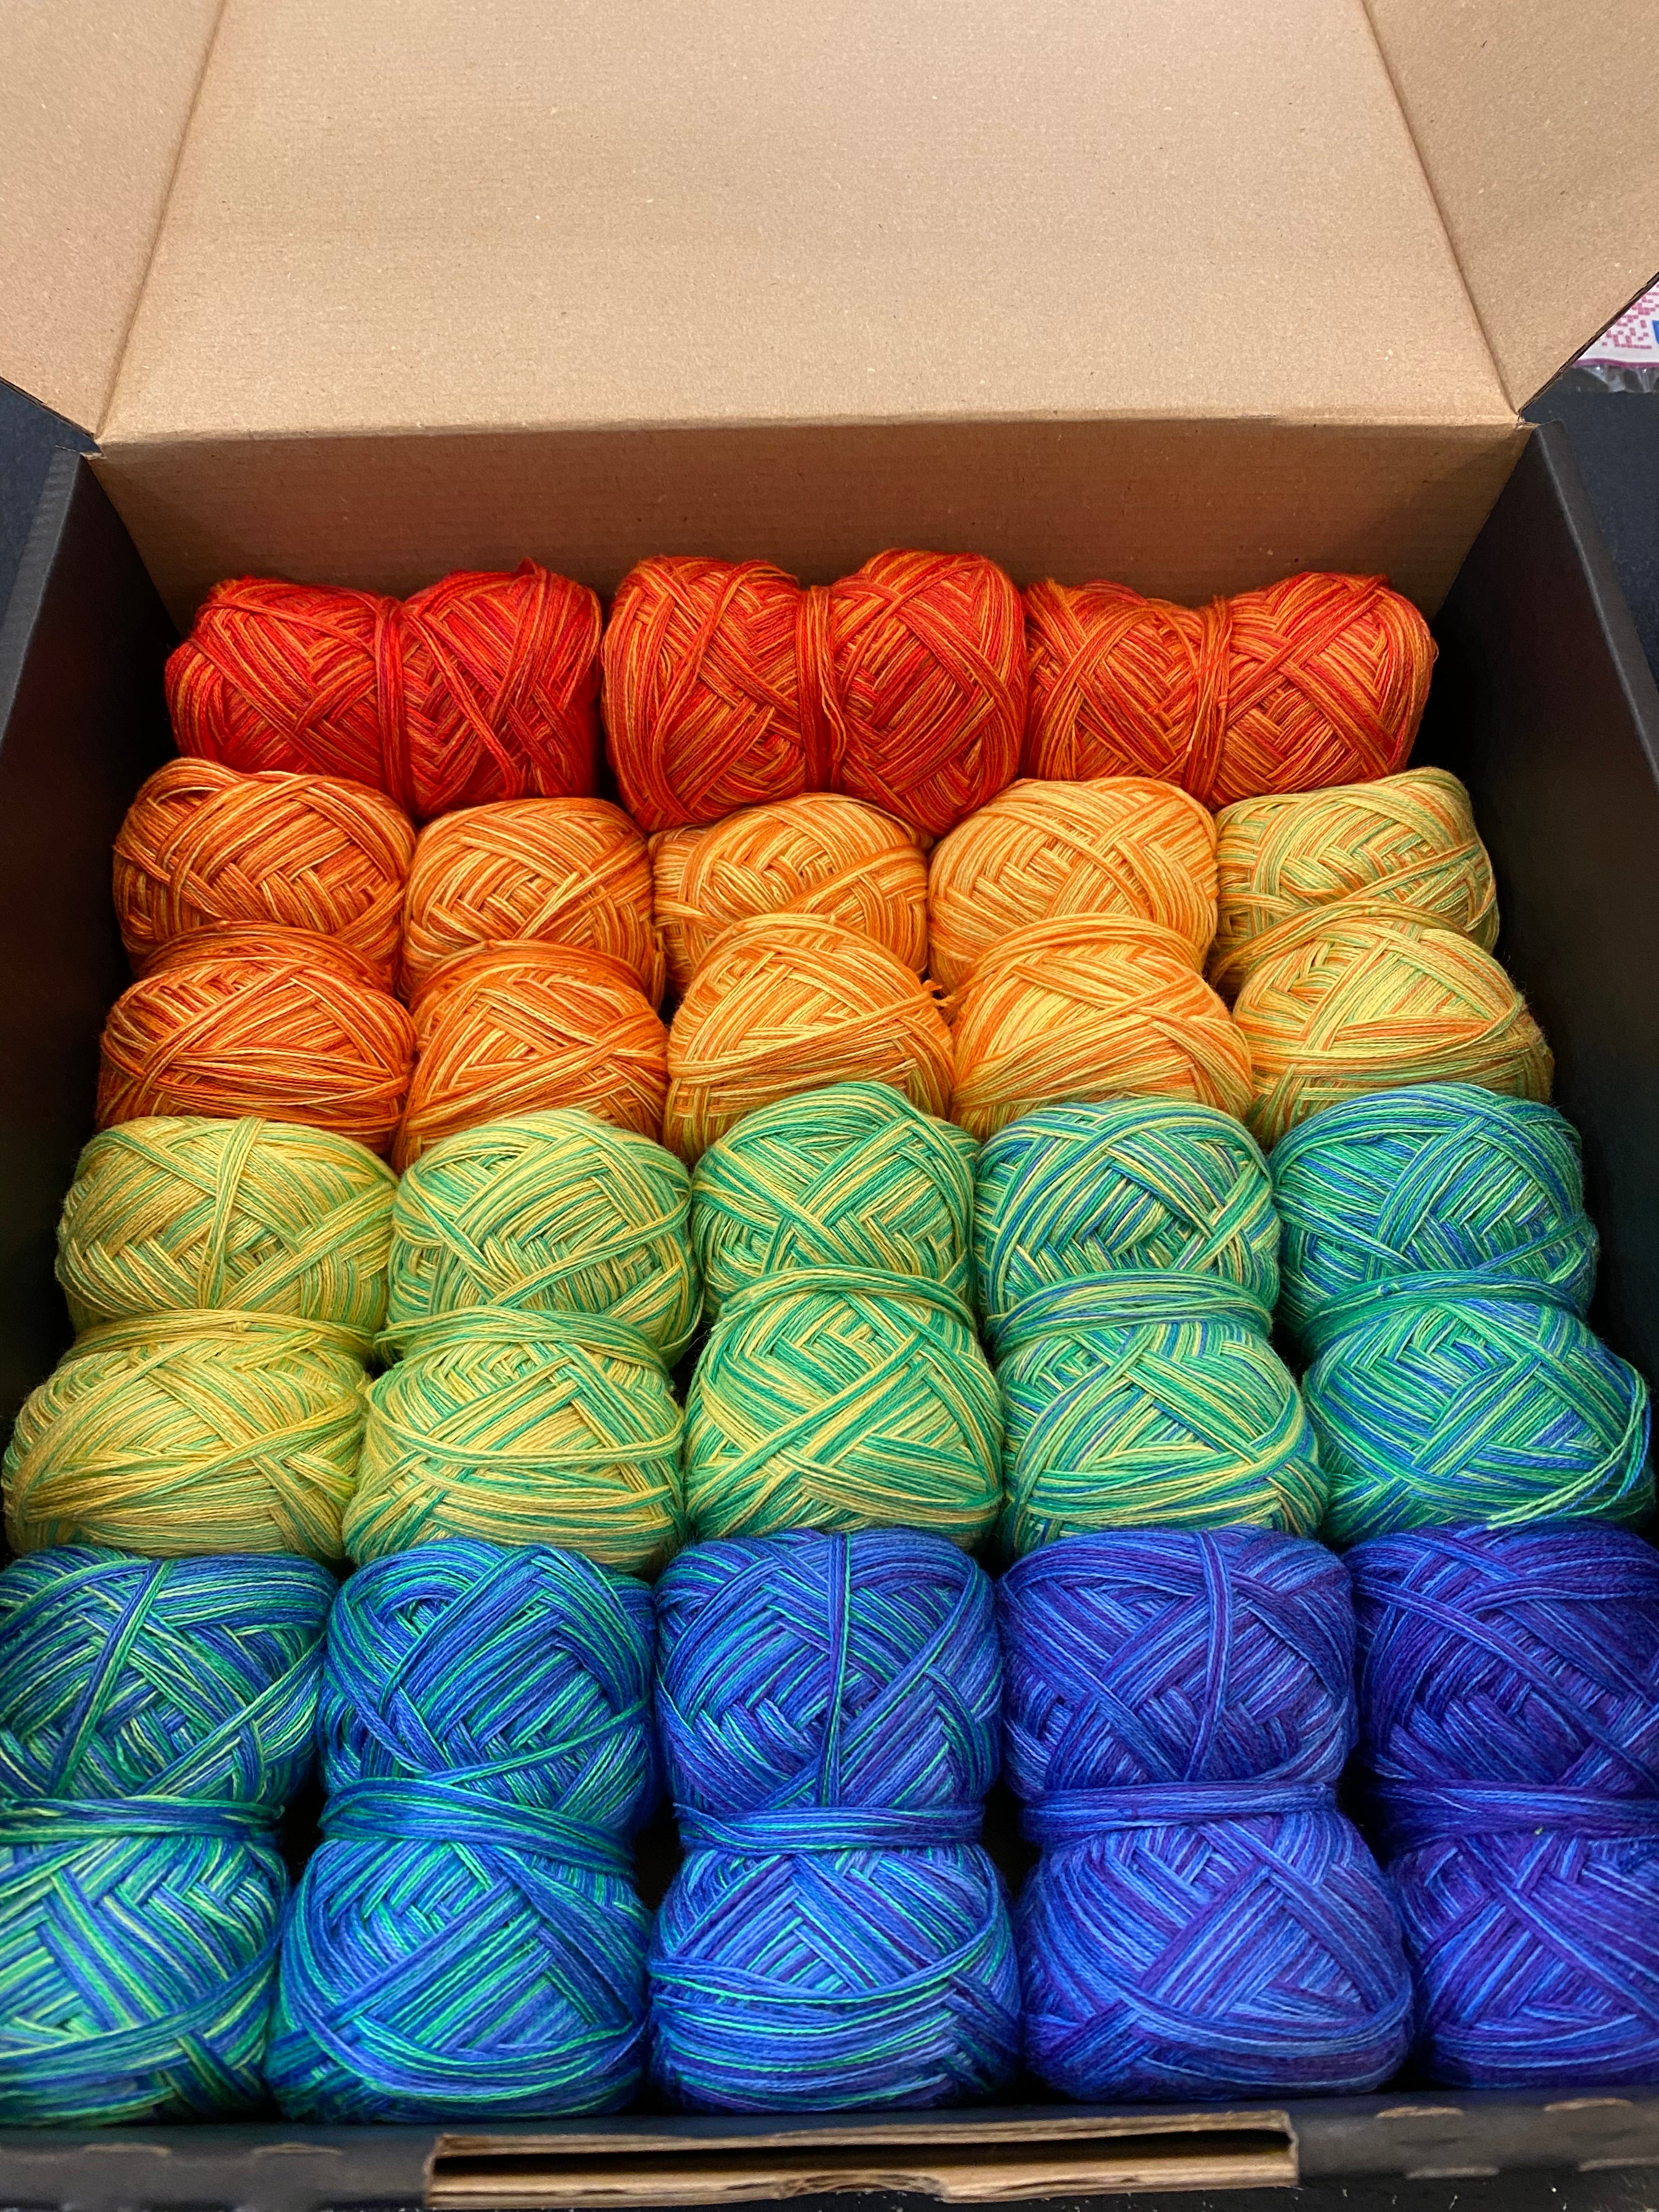 100Farbspiele - Regenbogen in der Kiste 900g +2 Neue Farbvarianten